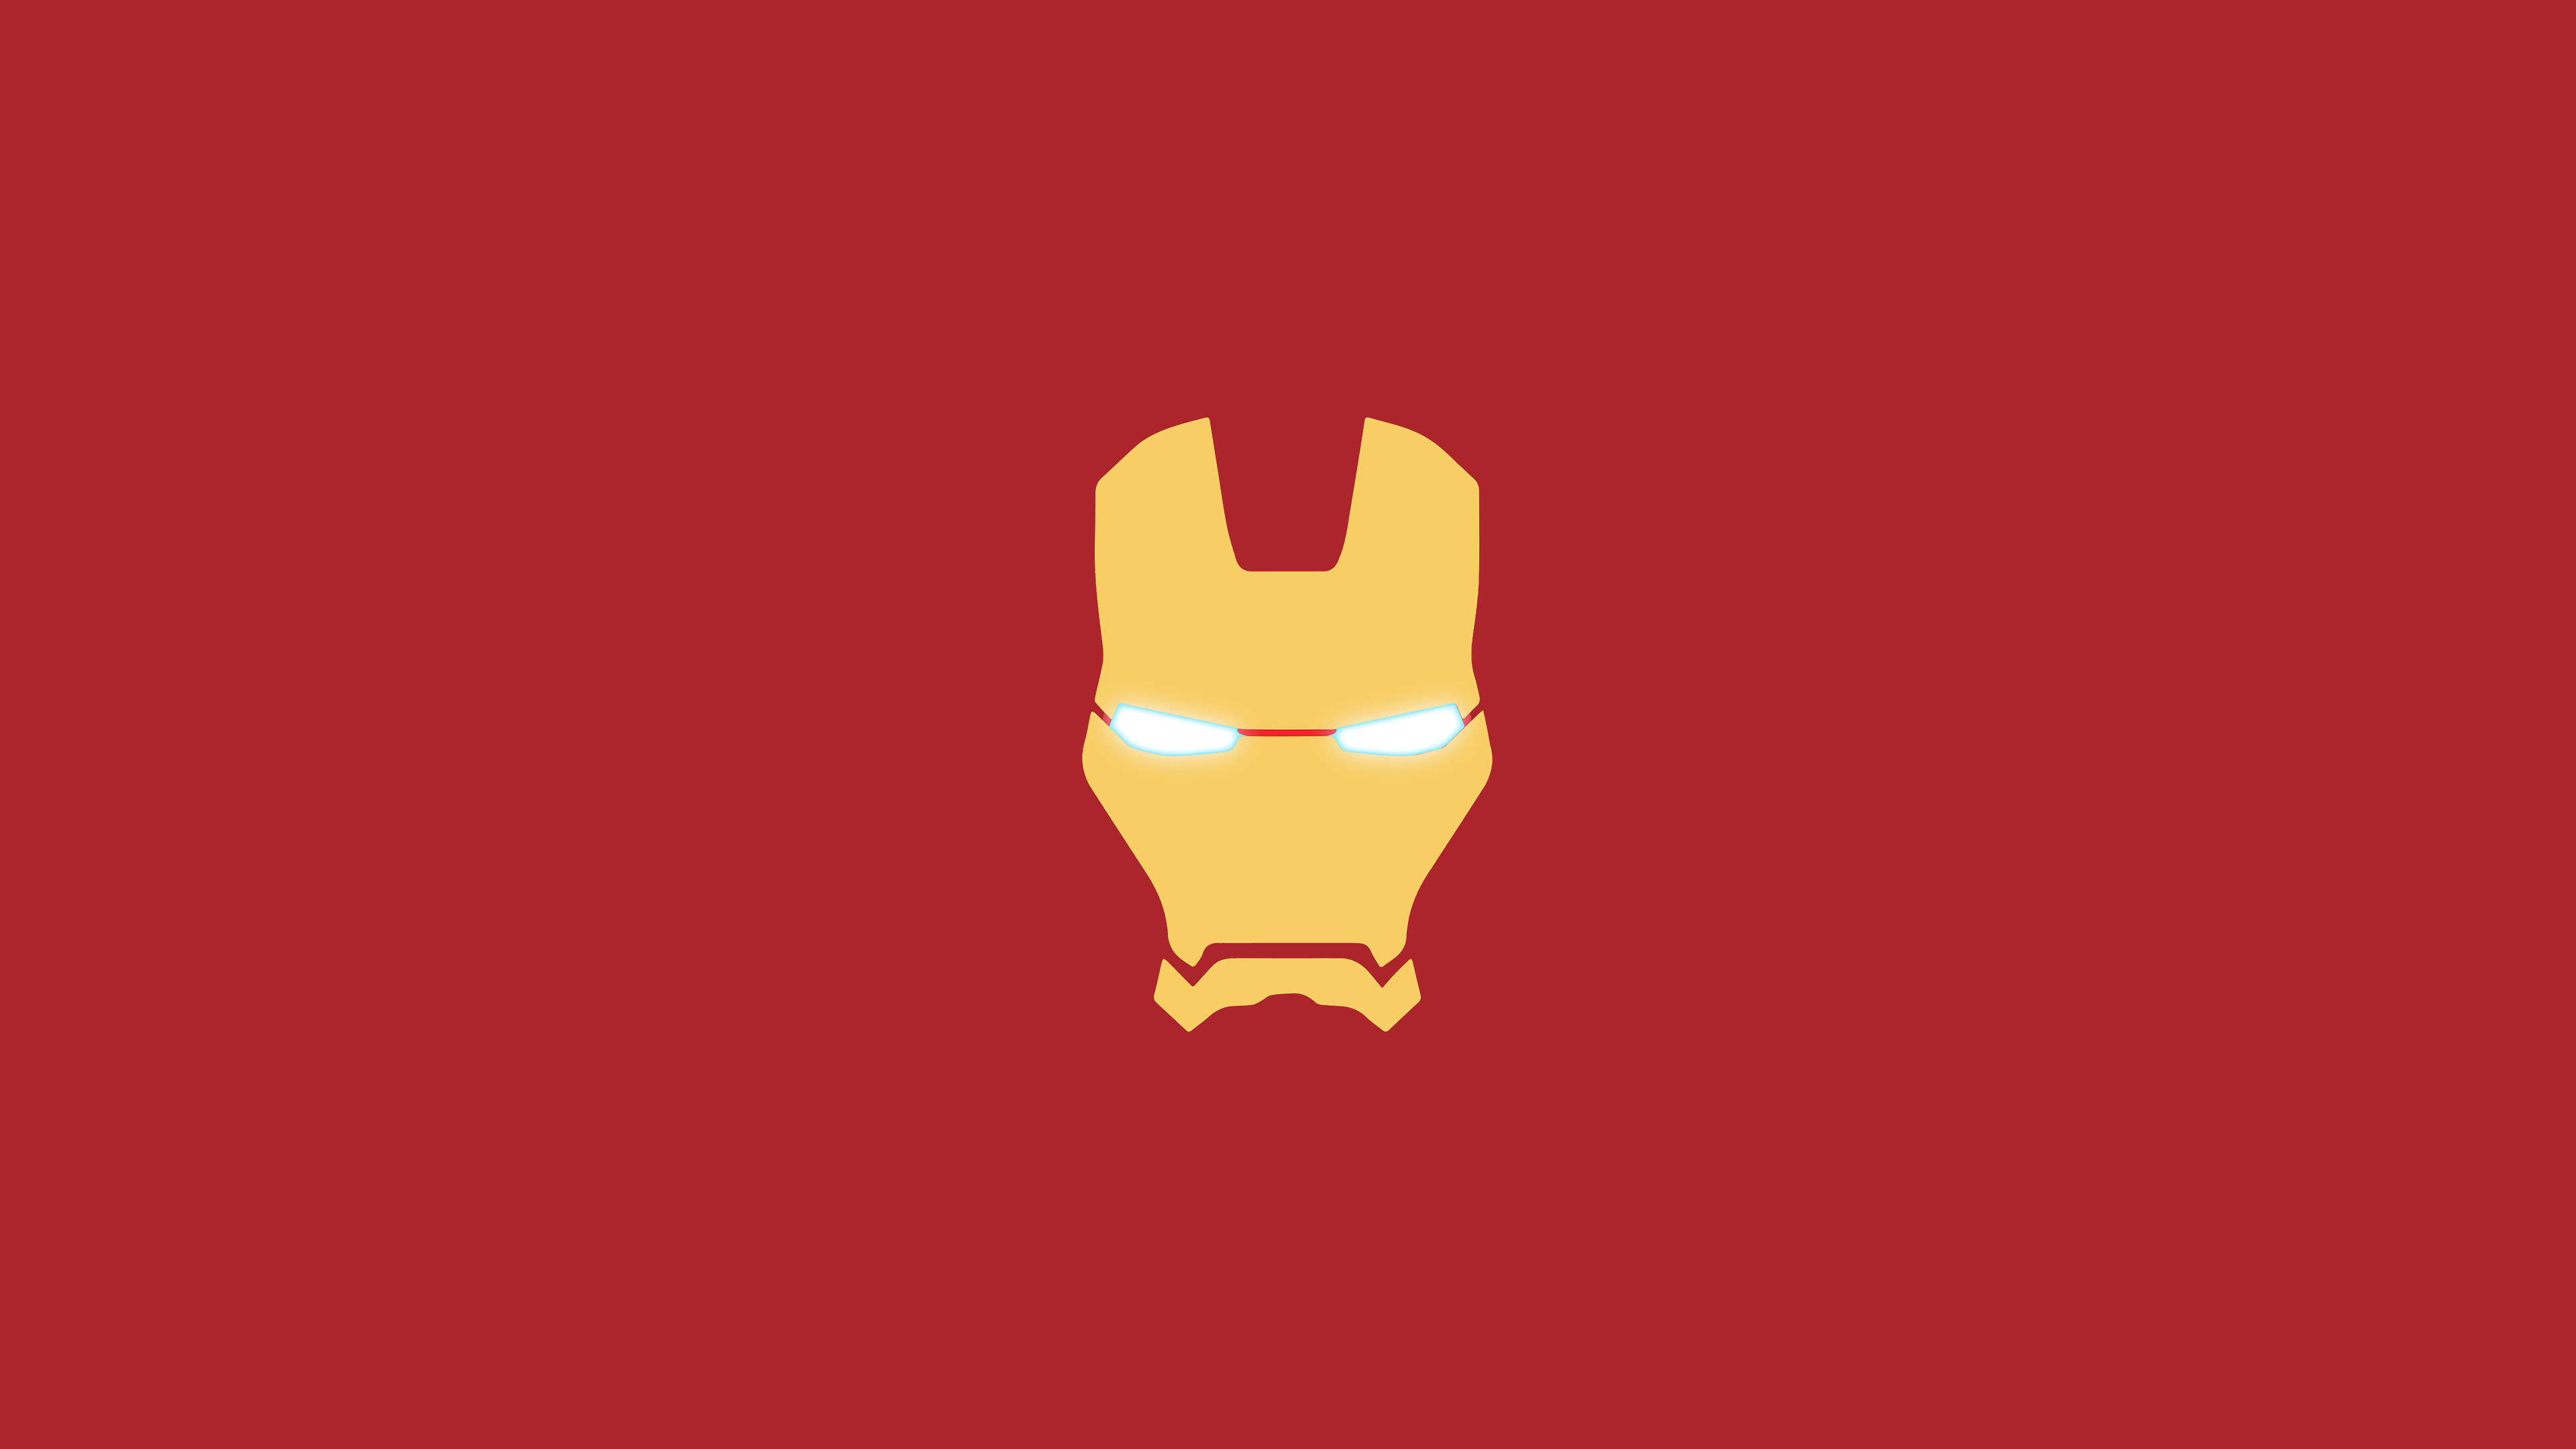 Iron Man Mask Minimal, HD Logo, 4k Wallpapers, Images ...